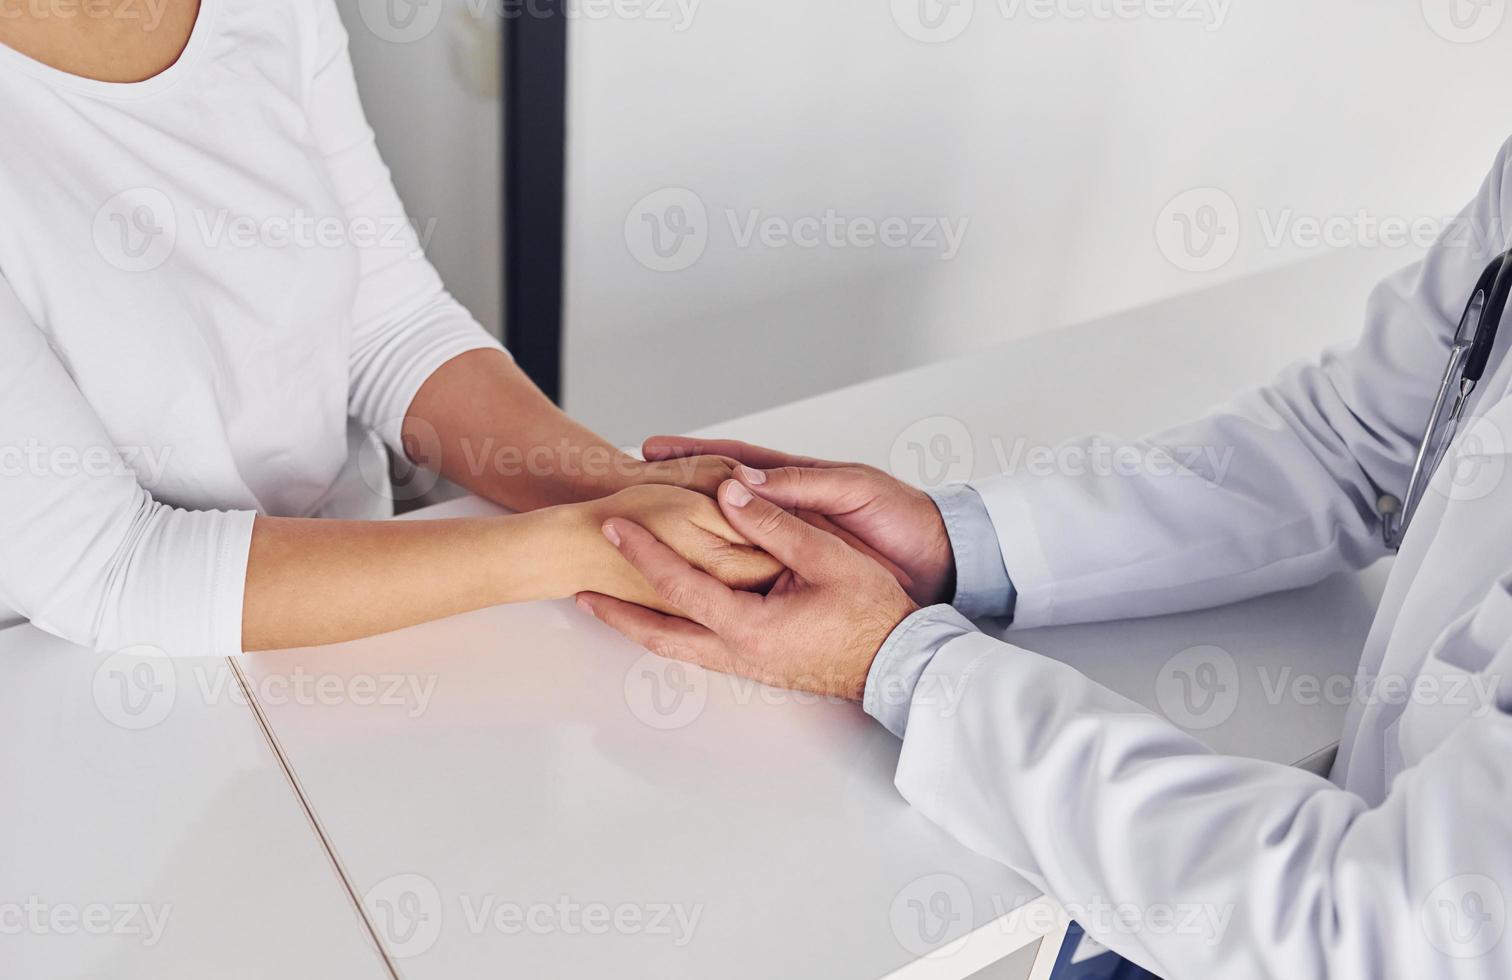 Holding klant door de handen. professioneel medisch in wit jas is in de kliniek foto